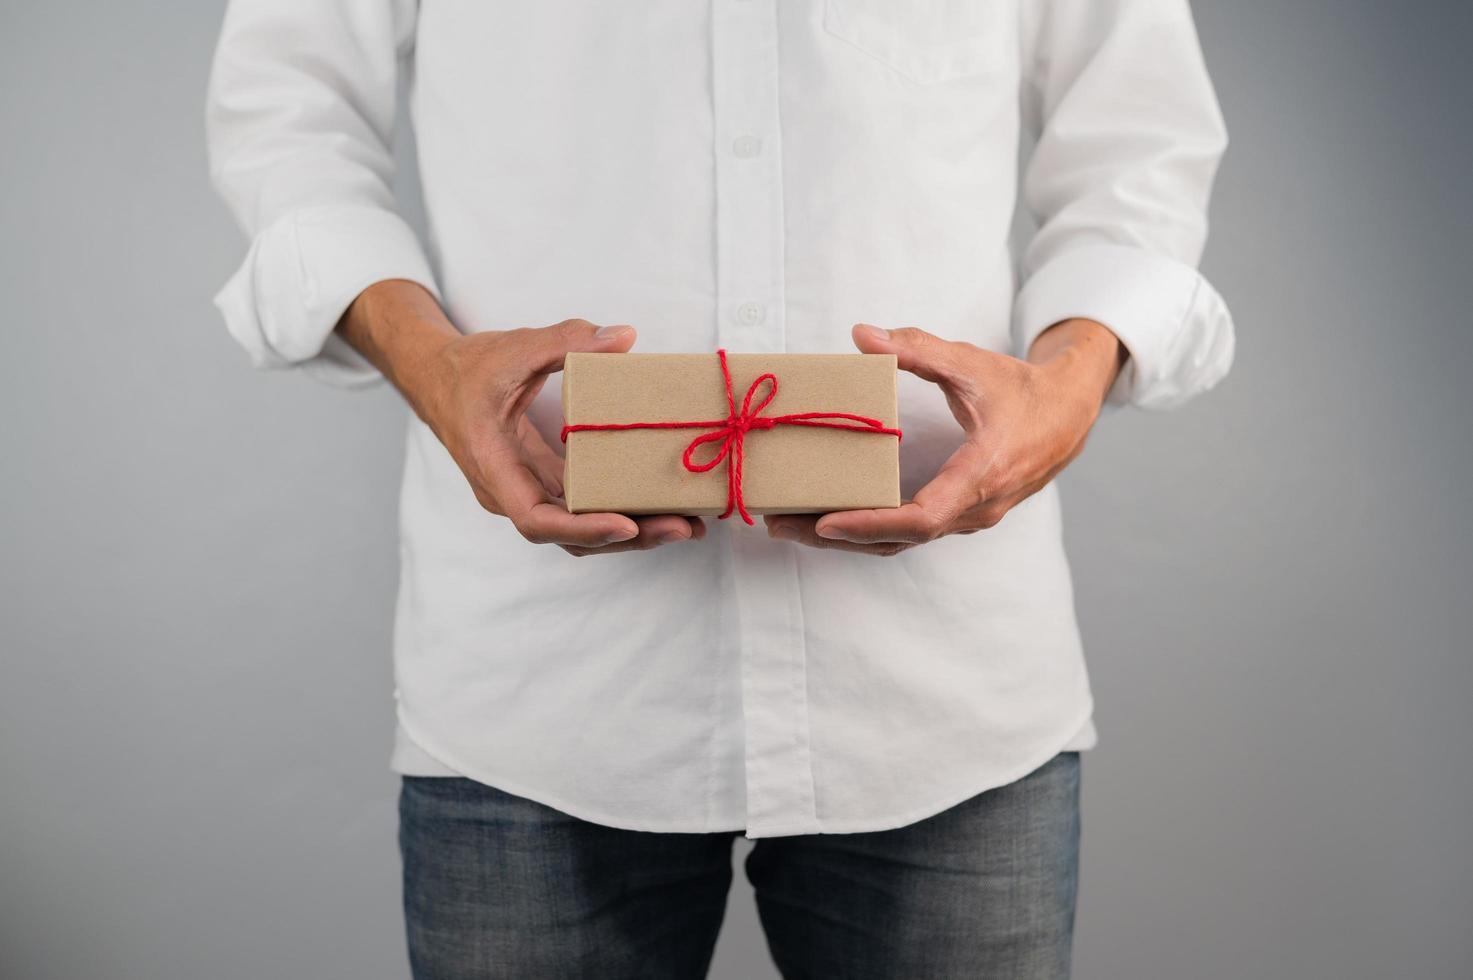 mano que sostiene la caja de regalo, caja de regalo de año nuevo, caja de regalo de Navidad, espacio de copia. Navidad, año nuevo, concepto de cumpleaños. foto